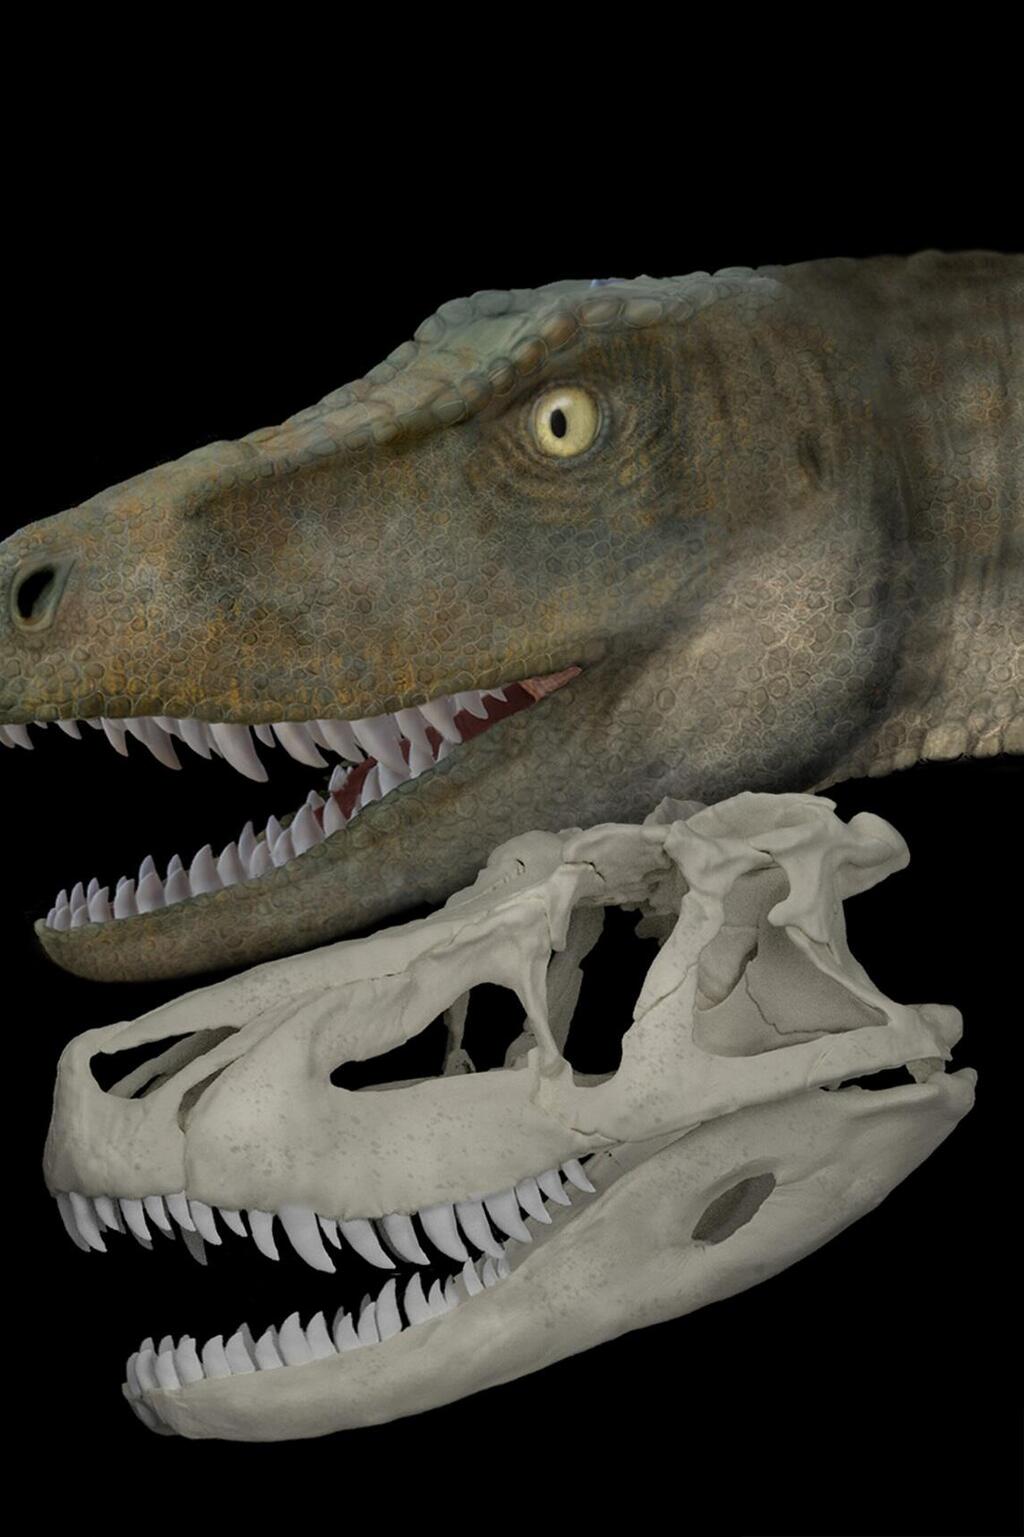 Los reptiles antiguos que precedieron a los dinosaurios tenían mordidas débiles, según un estudio